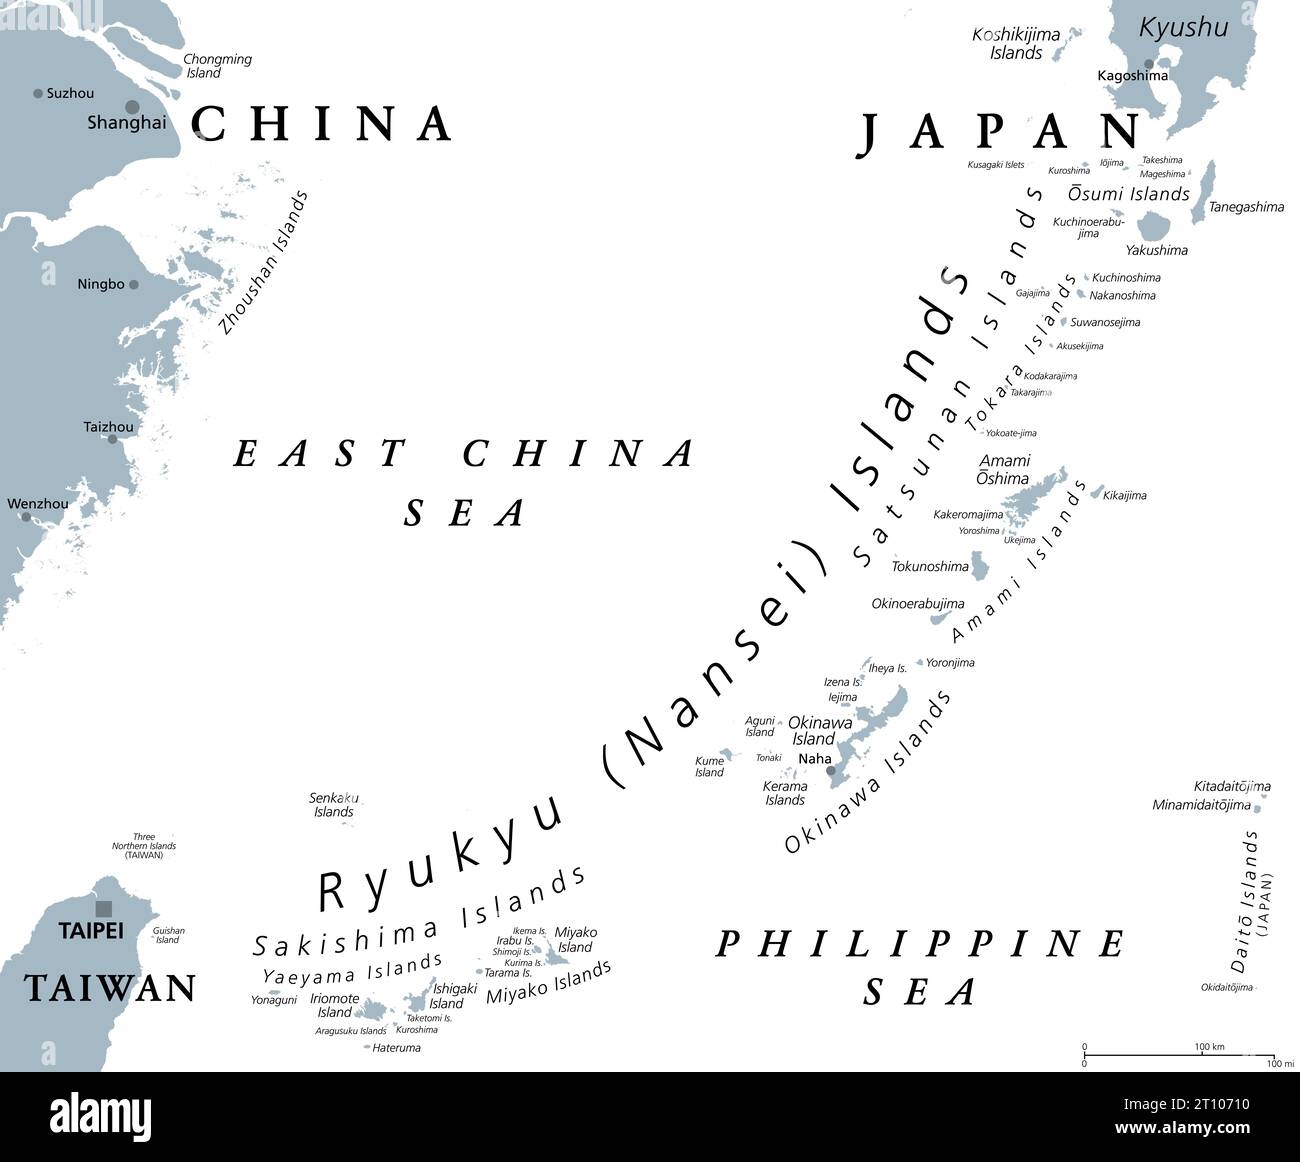 Isole Ryukyu, o Isole Nansei, mappa politica grigia. Ryukyu Arc, una catena di isole giapponesi per lo più vulcaniche che si estende da Kyushu all'isola di Yonaguni. Foto Stock